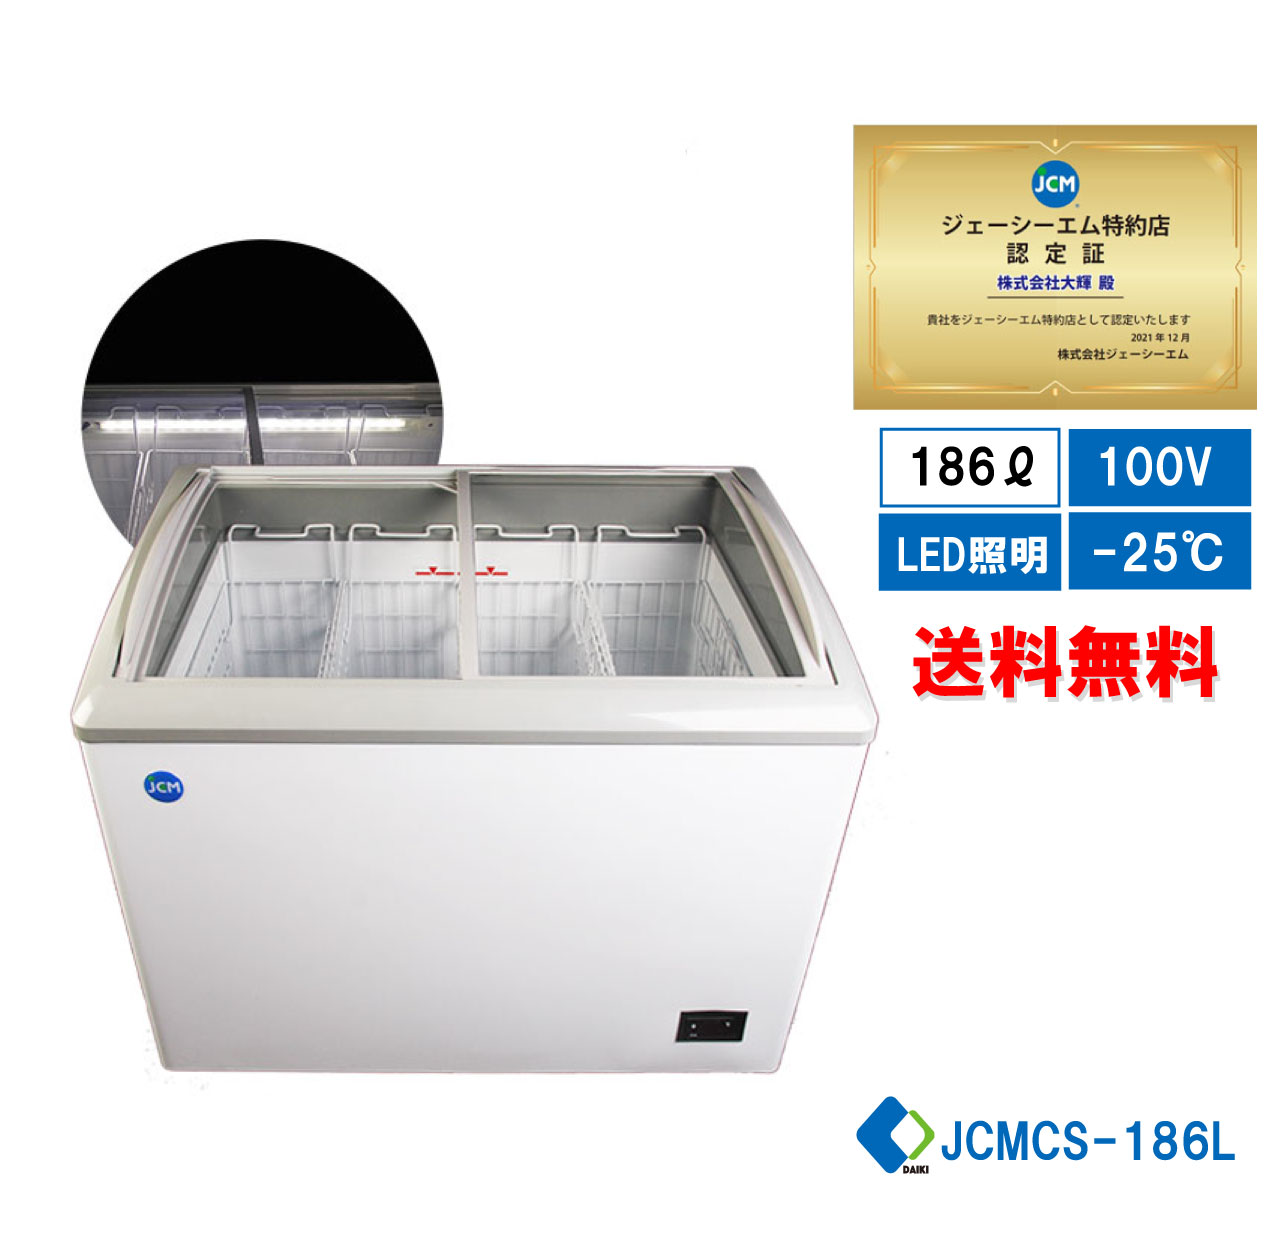 助成金対象商品 冷凍ショーケース JCM JCMCS-180L ストッカー 